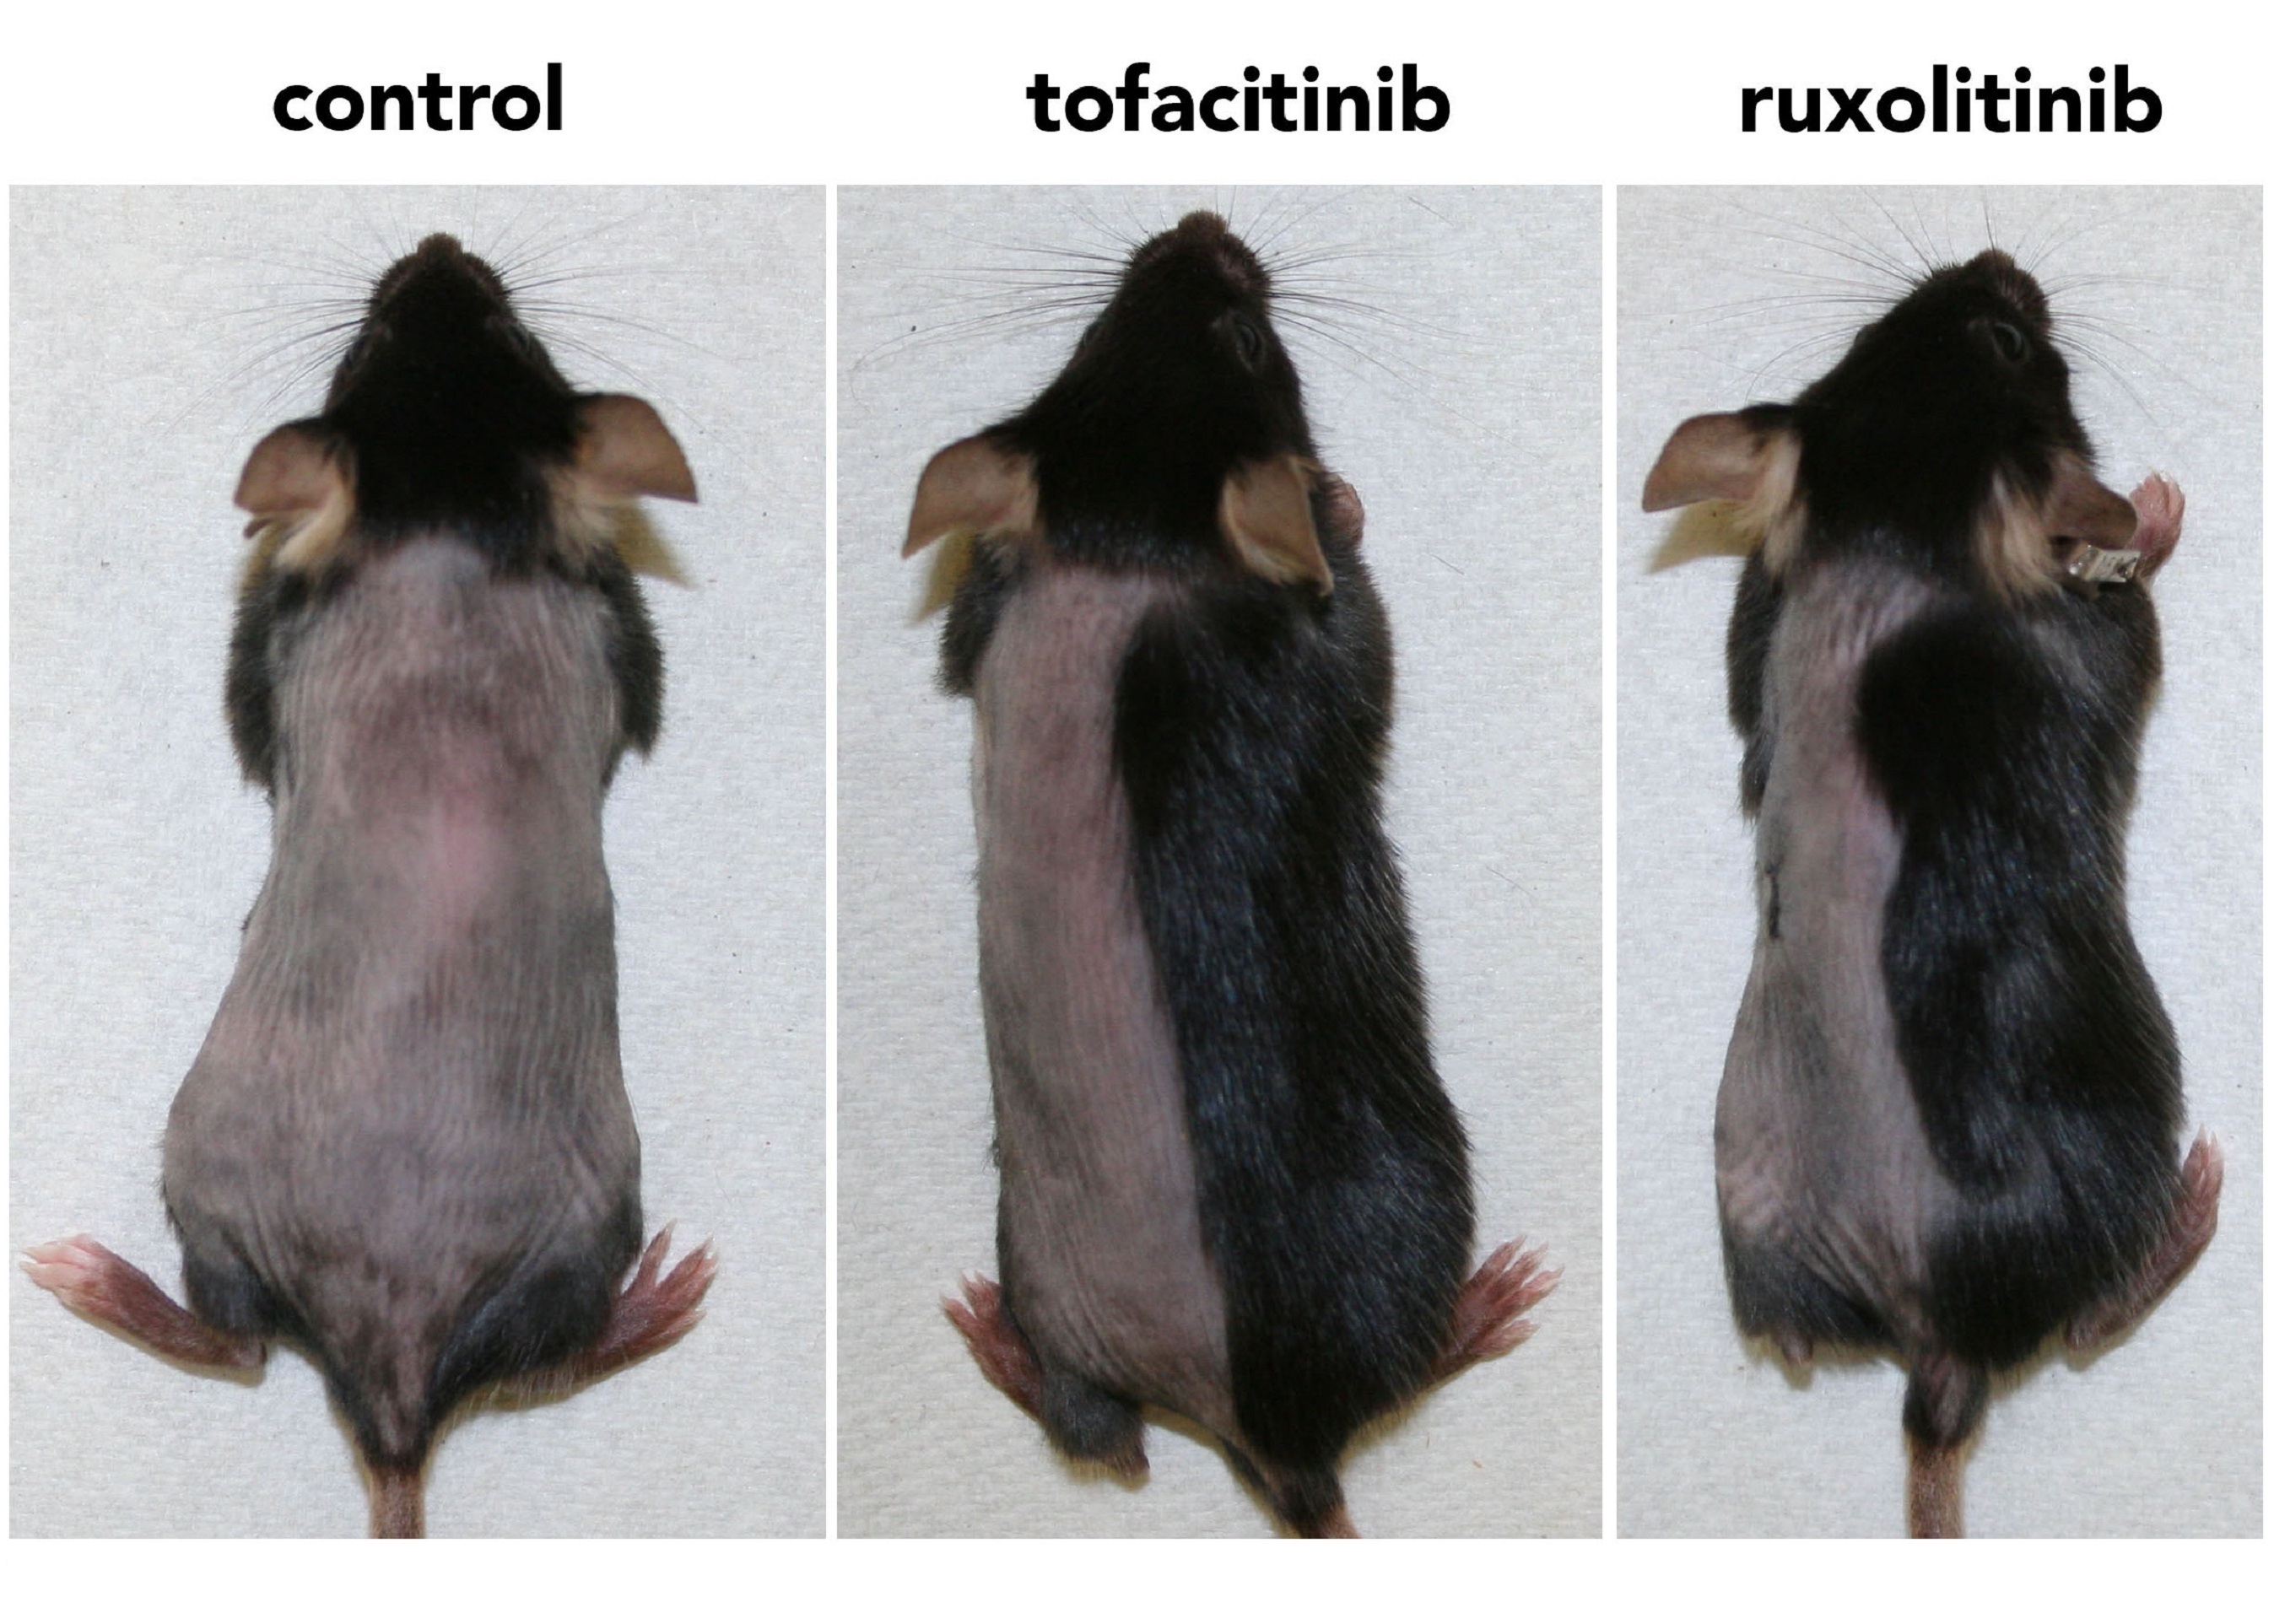 Ratón de control, al que no se aplicó ningún fármaco, y ratones a los que si se les aplicó (en el lado derecho del lomo). Imagen: S. Harel et al. Fuente: Sci. Adv.